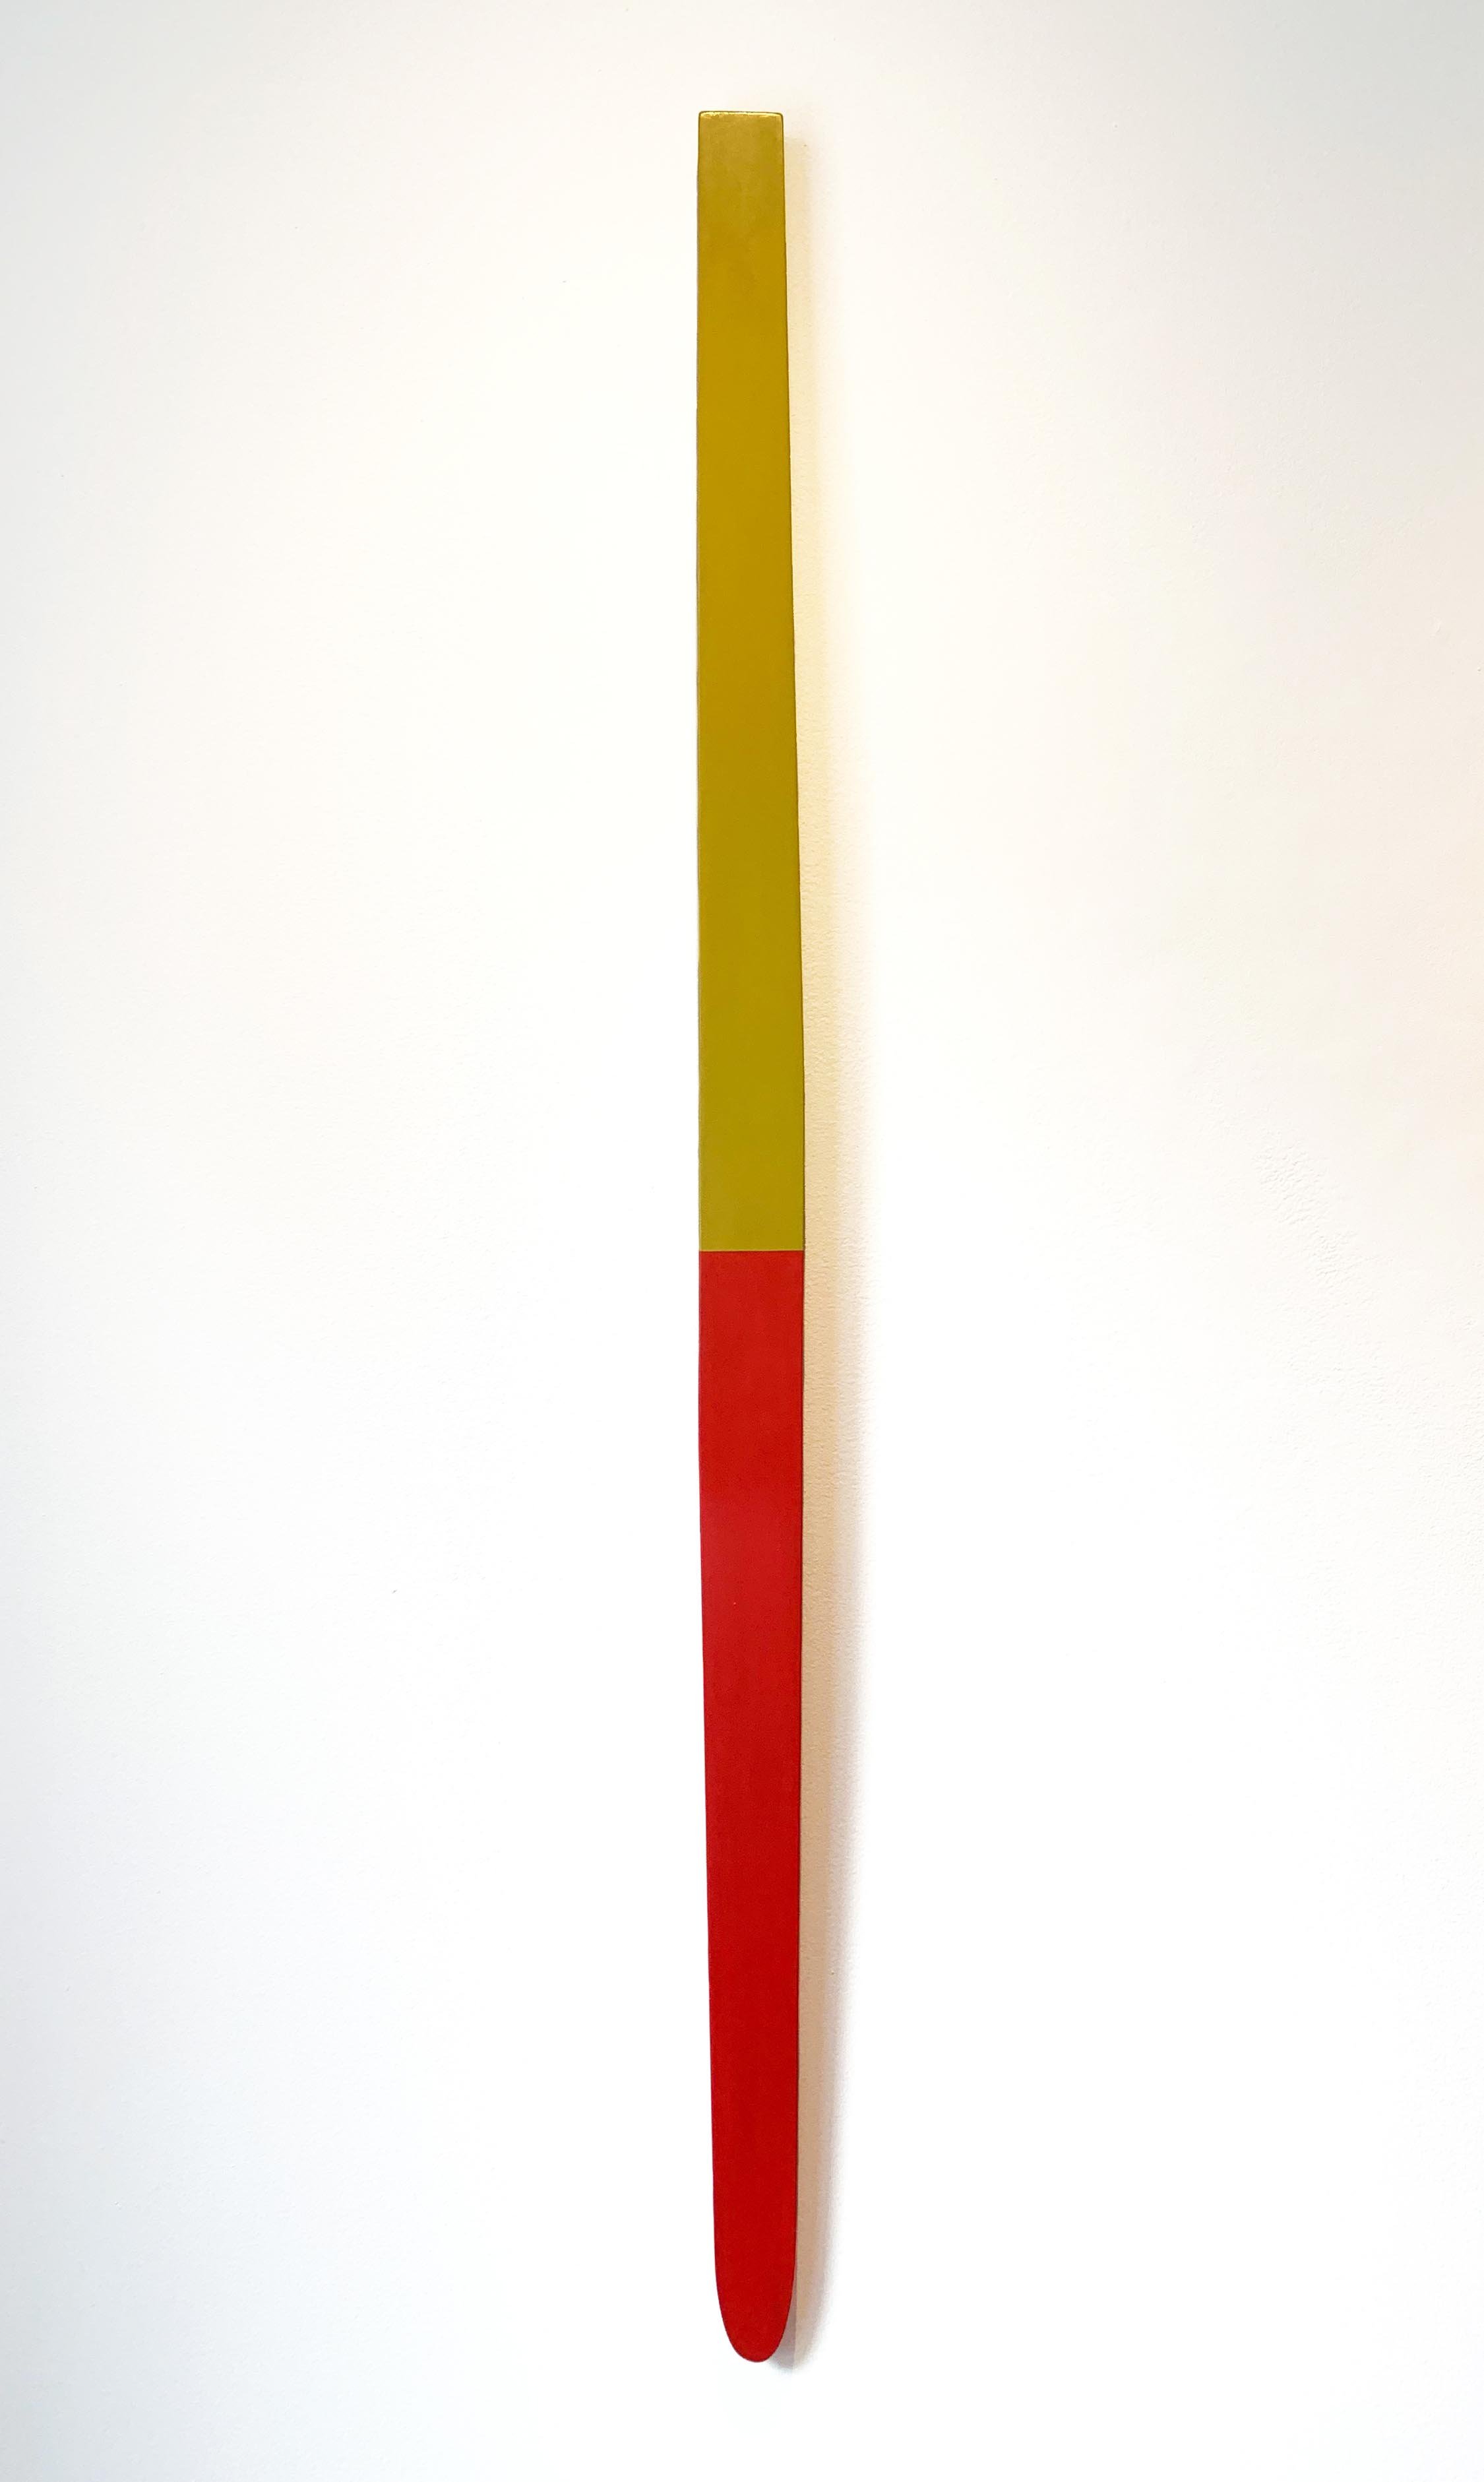 DOUBLEVISION #3 | 62 x 3 x 1 3/4 inches / 158 x 7.5 x 4.5 cm, acrylic on poplar, 2022